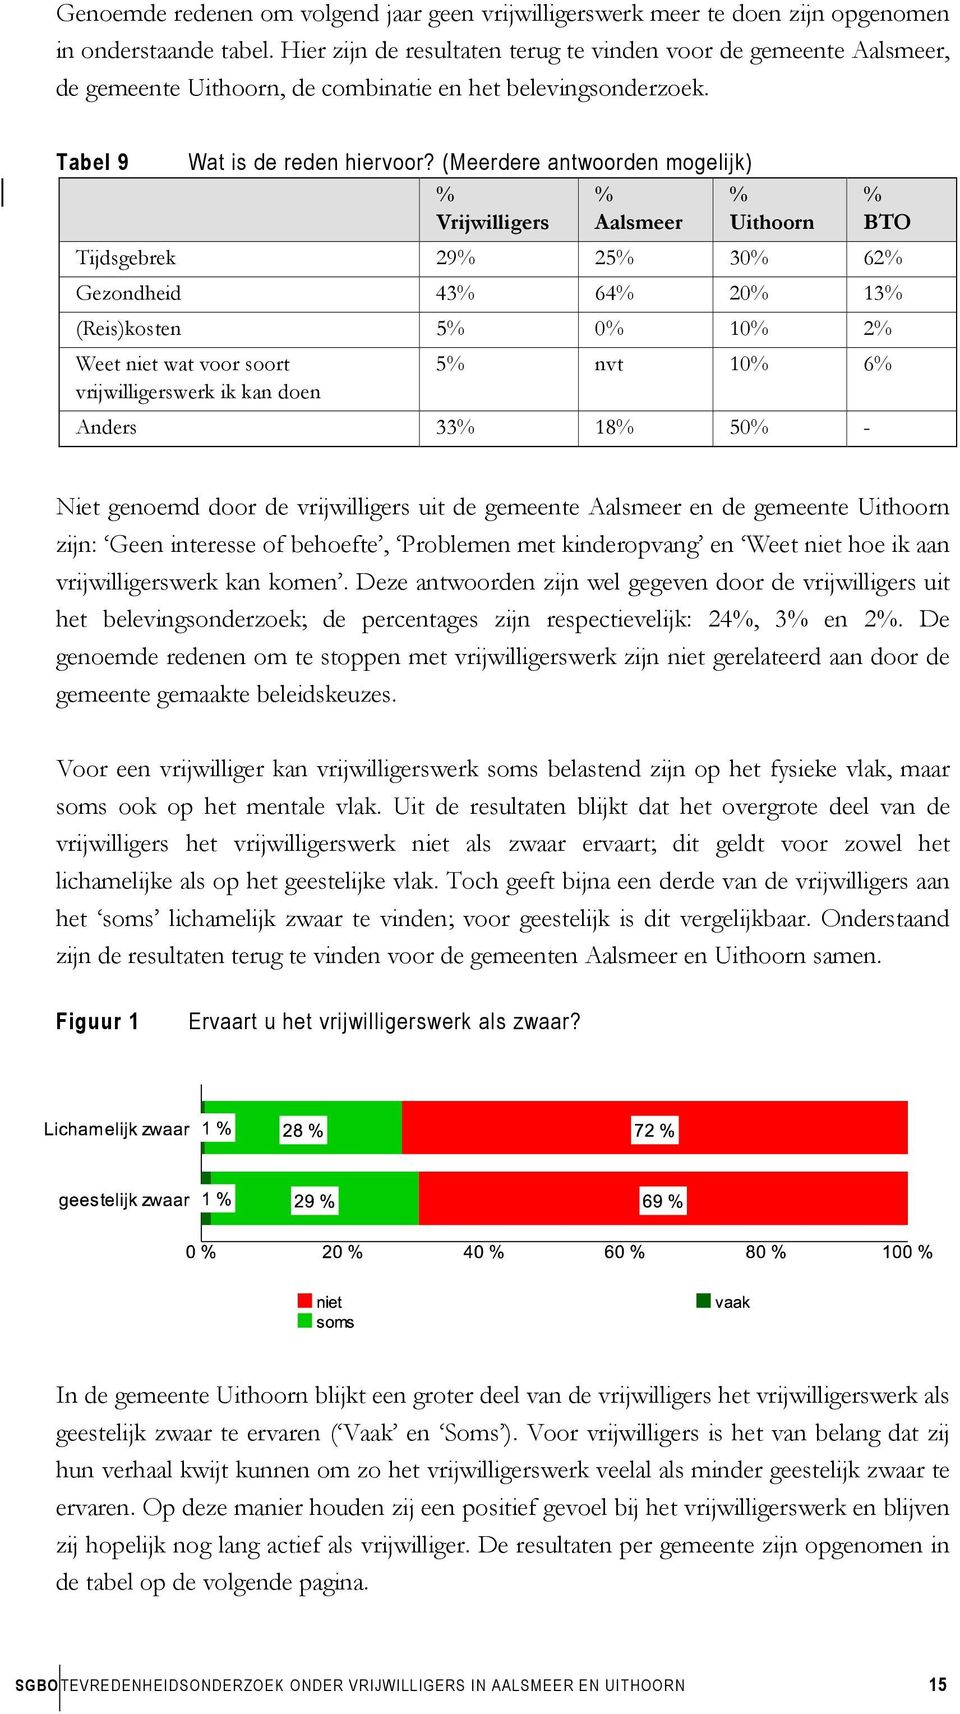 (Meerdere antwoorden mogelijk) % Vrijwilligers % Aalsmeer % Uithoorn % BTO Tijdsgebrek 29% 25% 30% 62% Gezondheid 43% 64% 20% 13% (Reis)kosten 5% 0% 10% 2% Weet niet wat voor soort vrijwilligerswerk